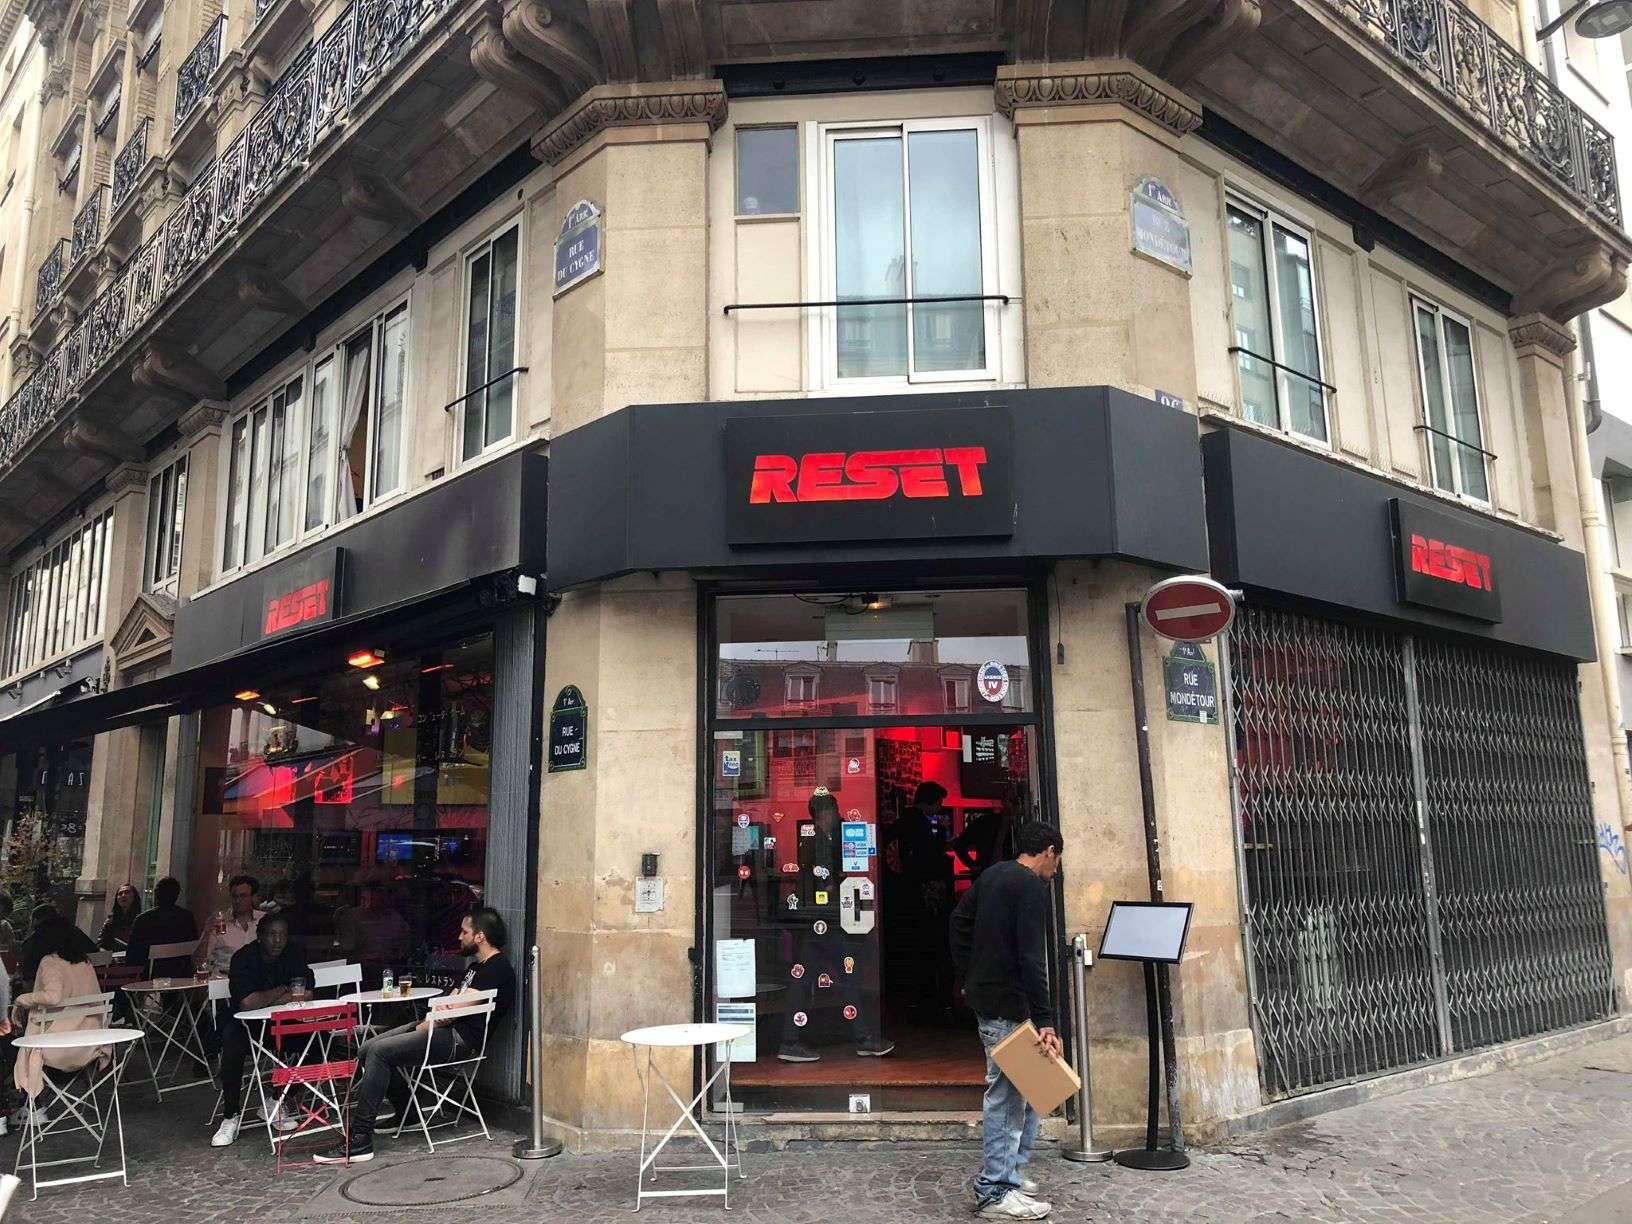 Paryski Reset, czyli krótka wizyta w gamingowym barze